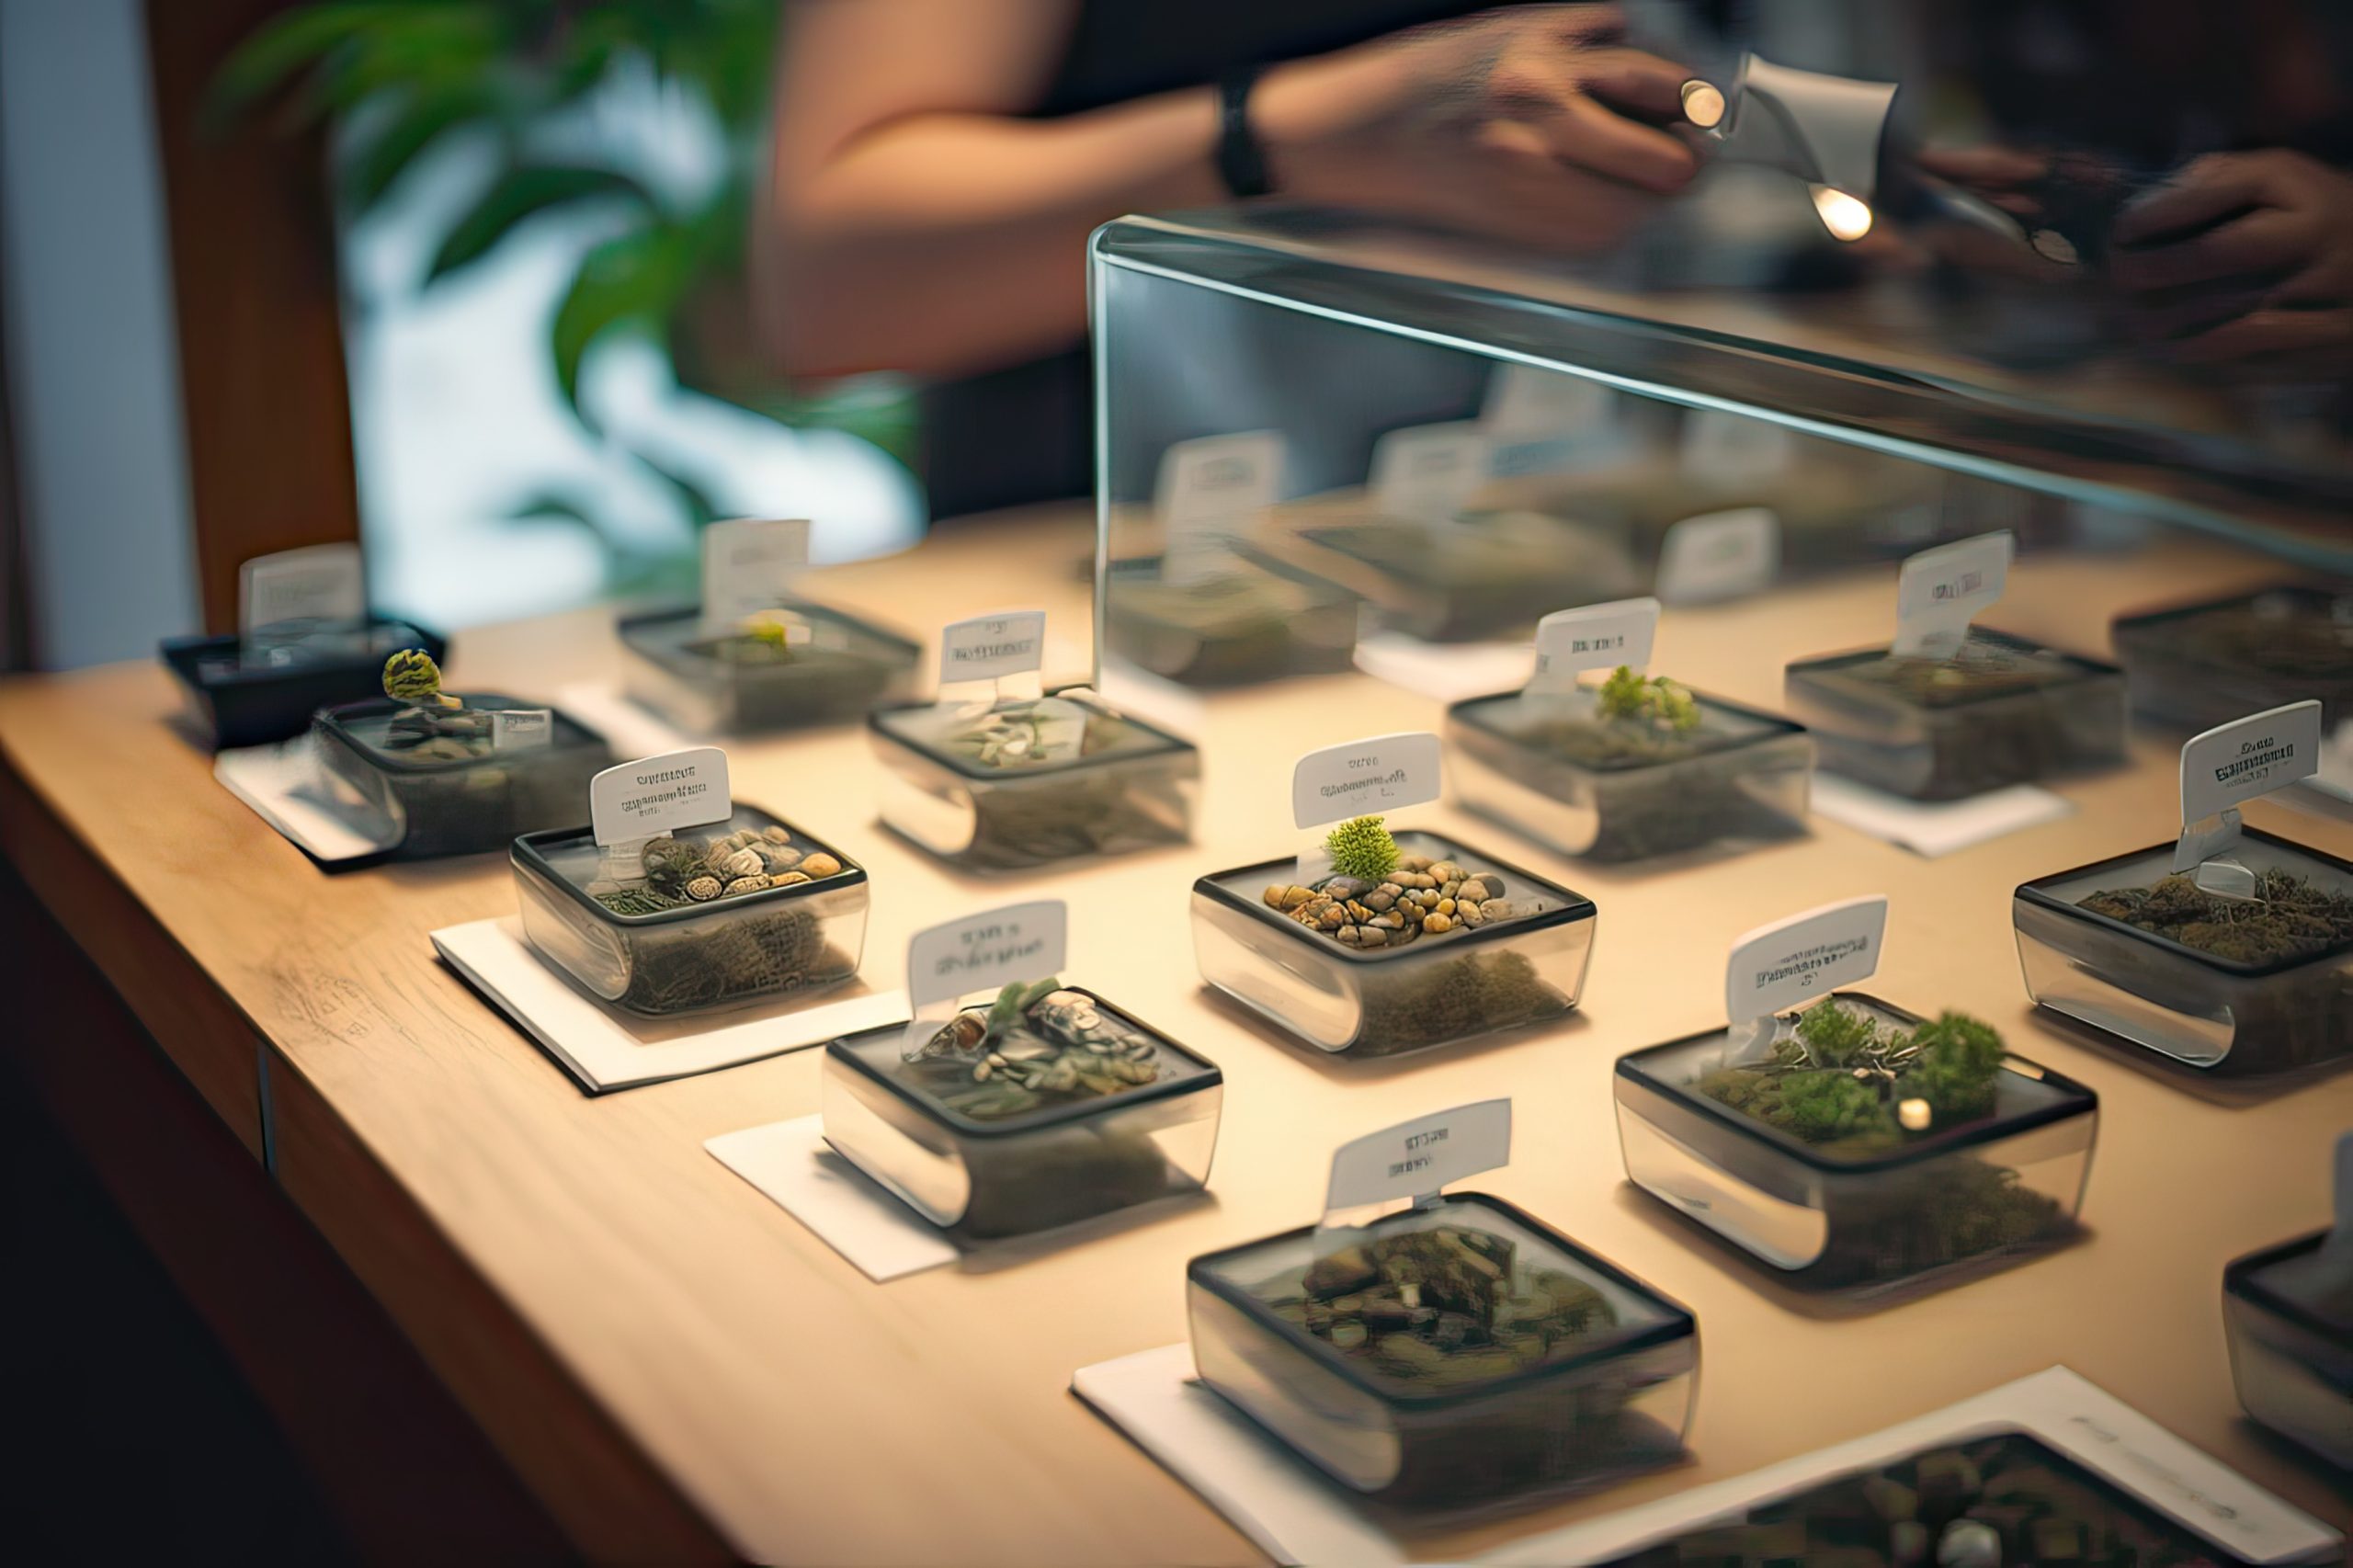 Store displaying various cannabis flower samples, medicinal marijuana